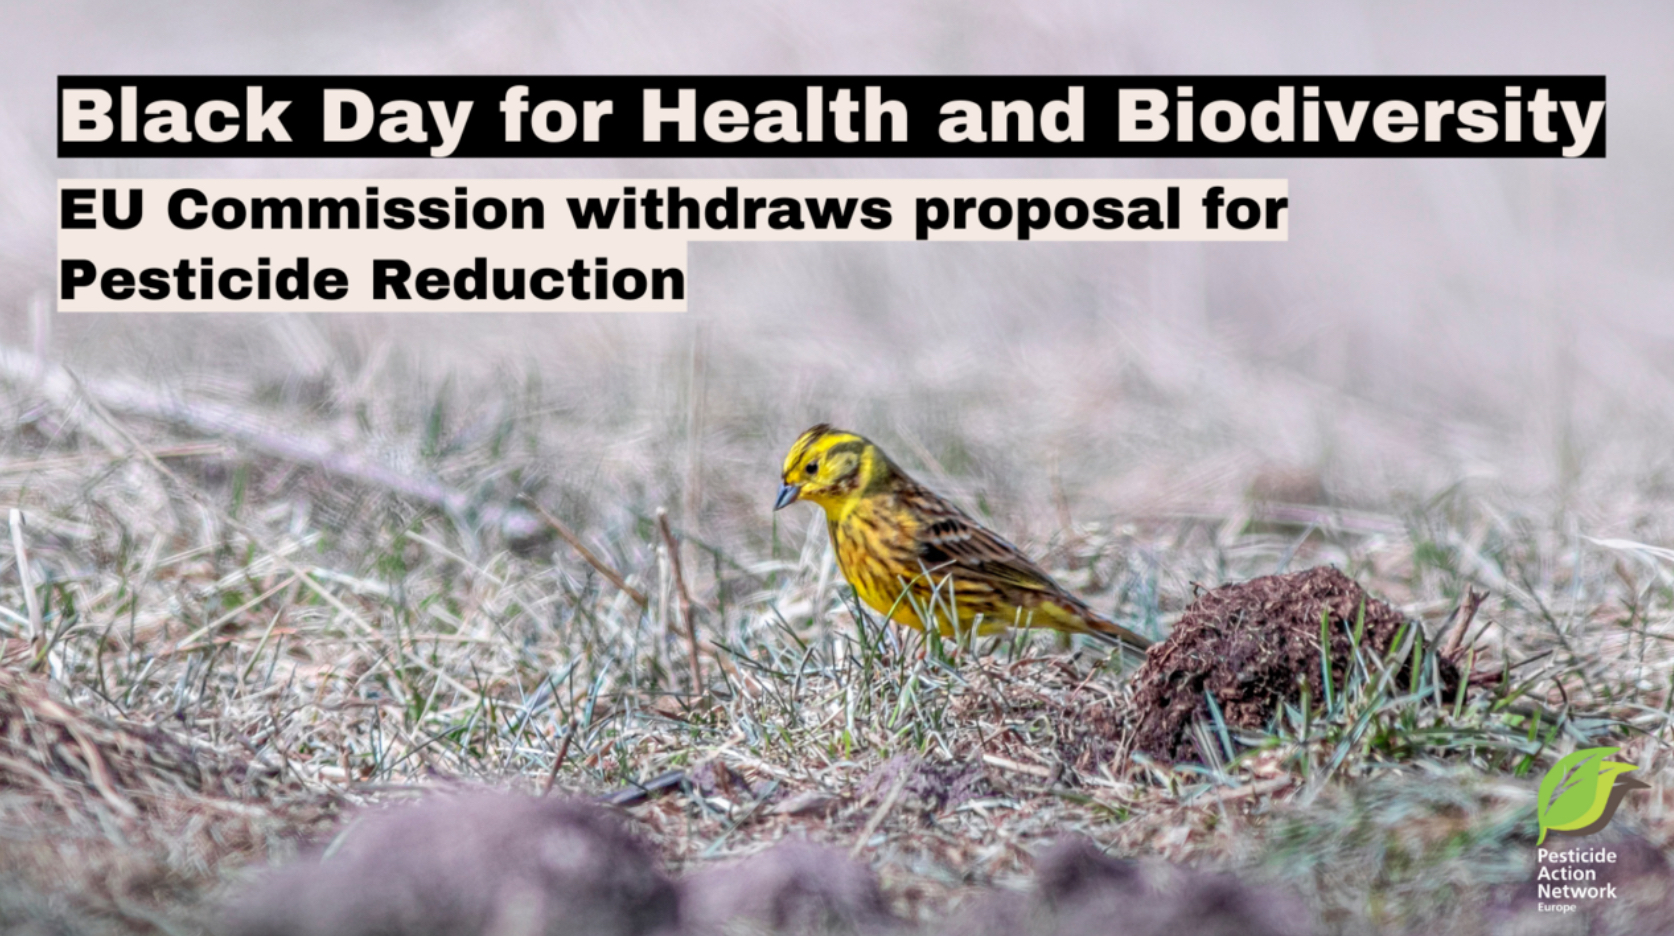 Giornata nera per la salute e la biodiversità: la Commissione europea ritira la proposta di riduzione dei pesticidi